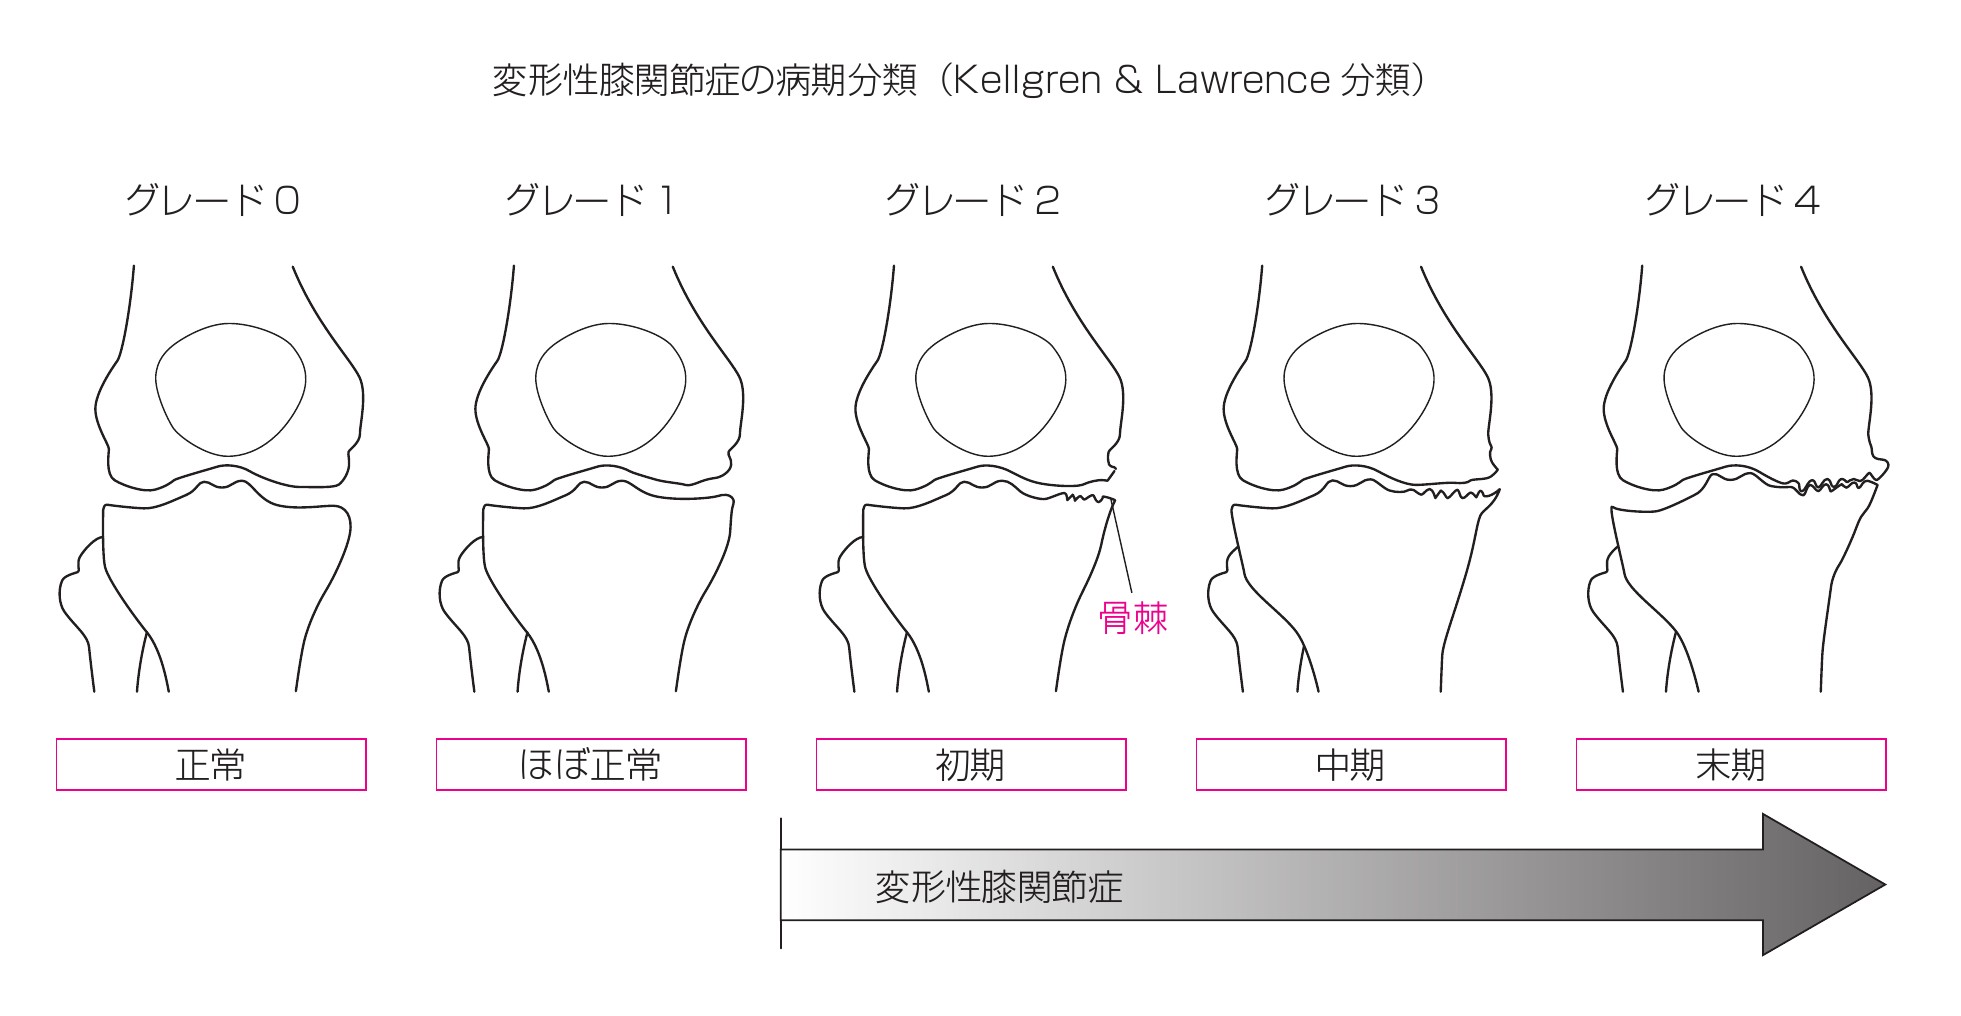 変形性膝関節症分類図